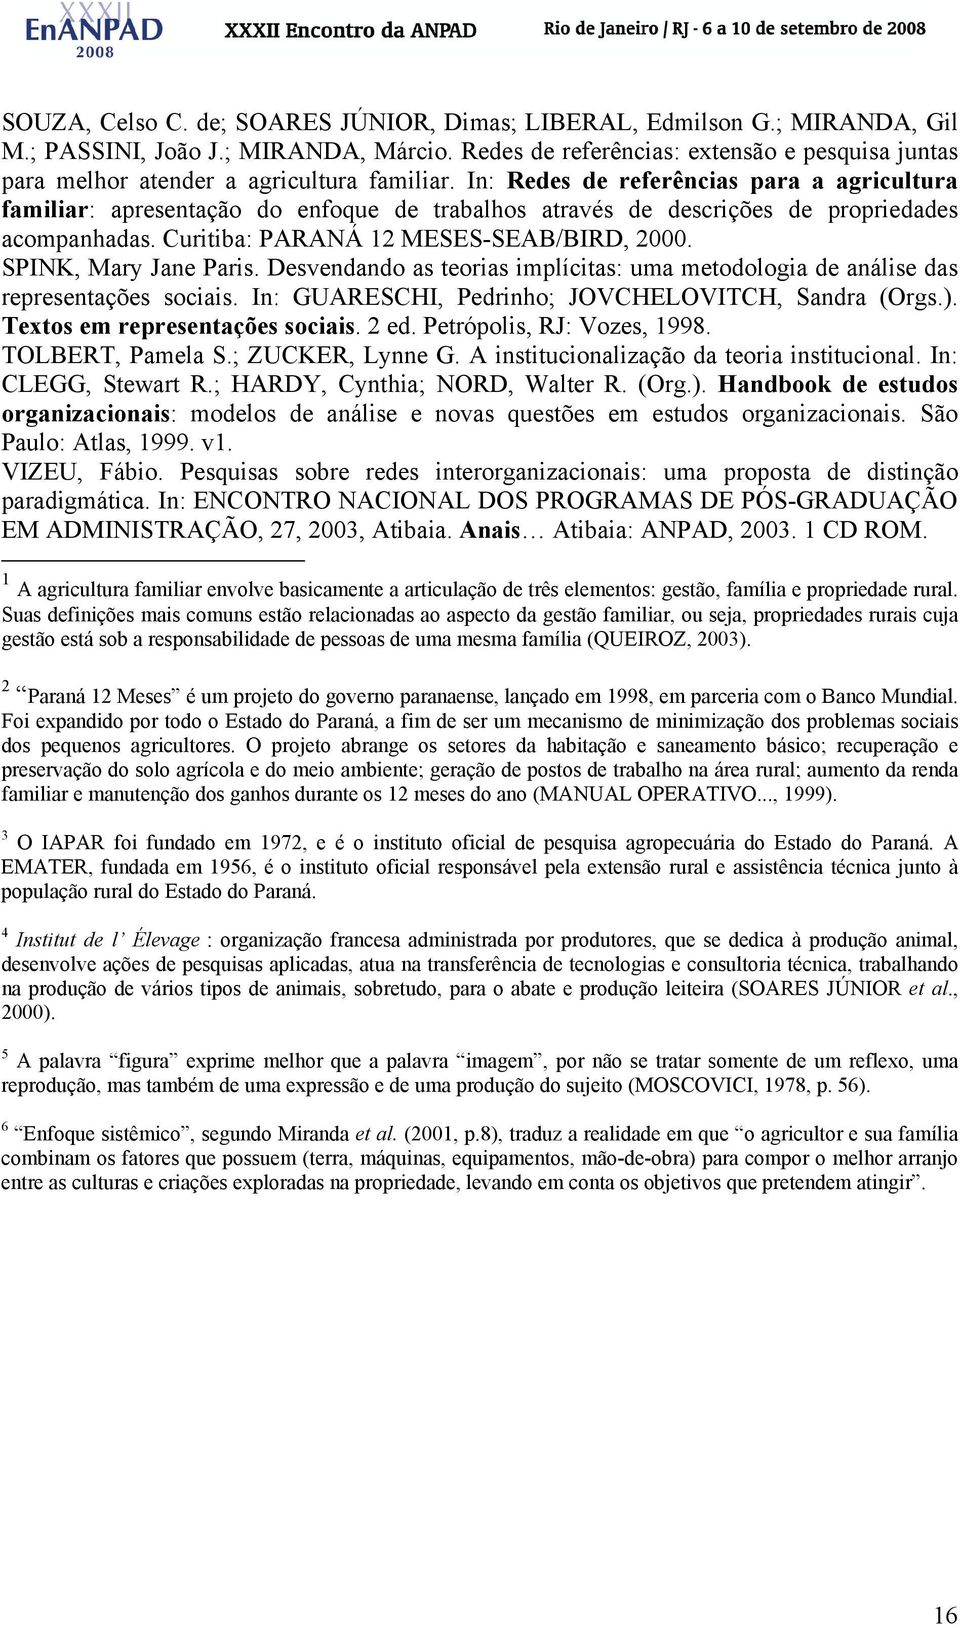 In: Redes de referências para a agricultura familiar: apresentação do enfoque de trabalhos através de descrições de propriedades acompanhadas. Curitiba: PARANÁ 12 MESES-SEAB/BIRD, 2000.